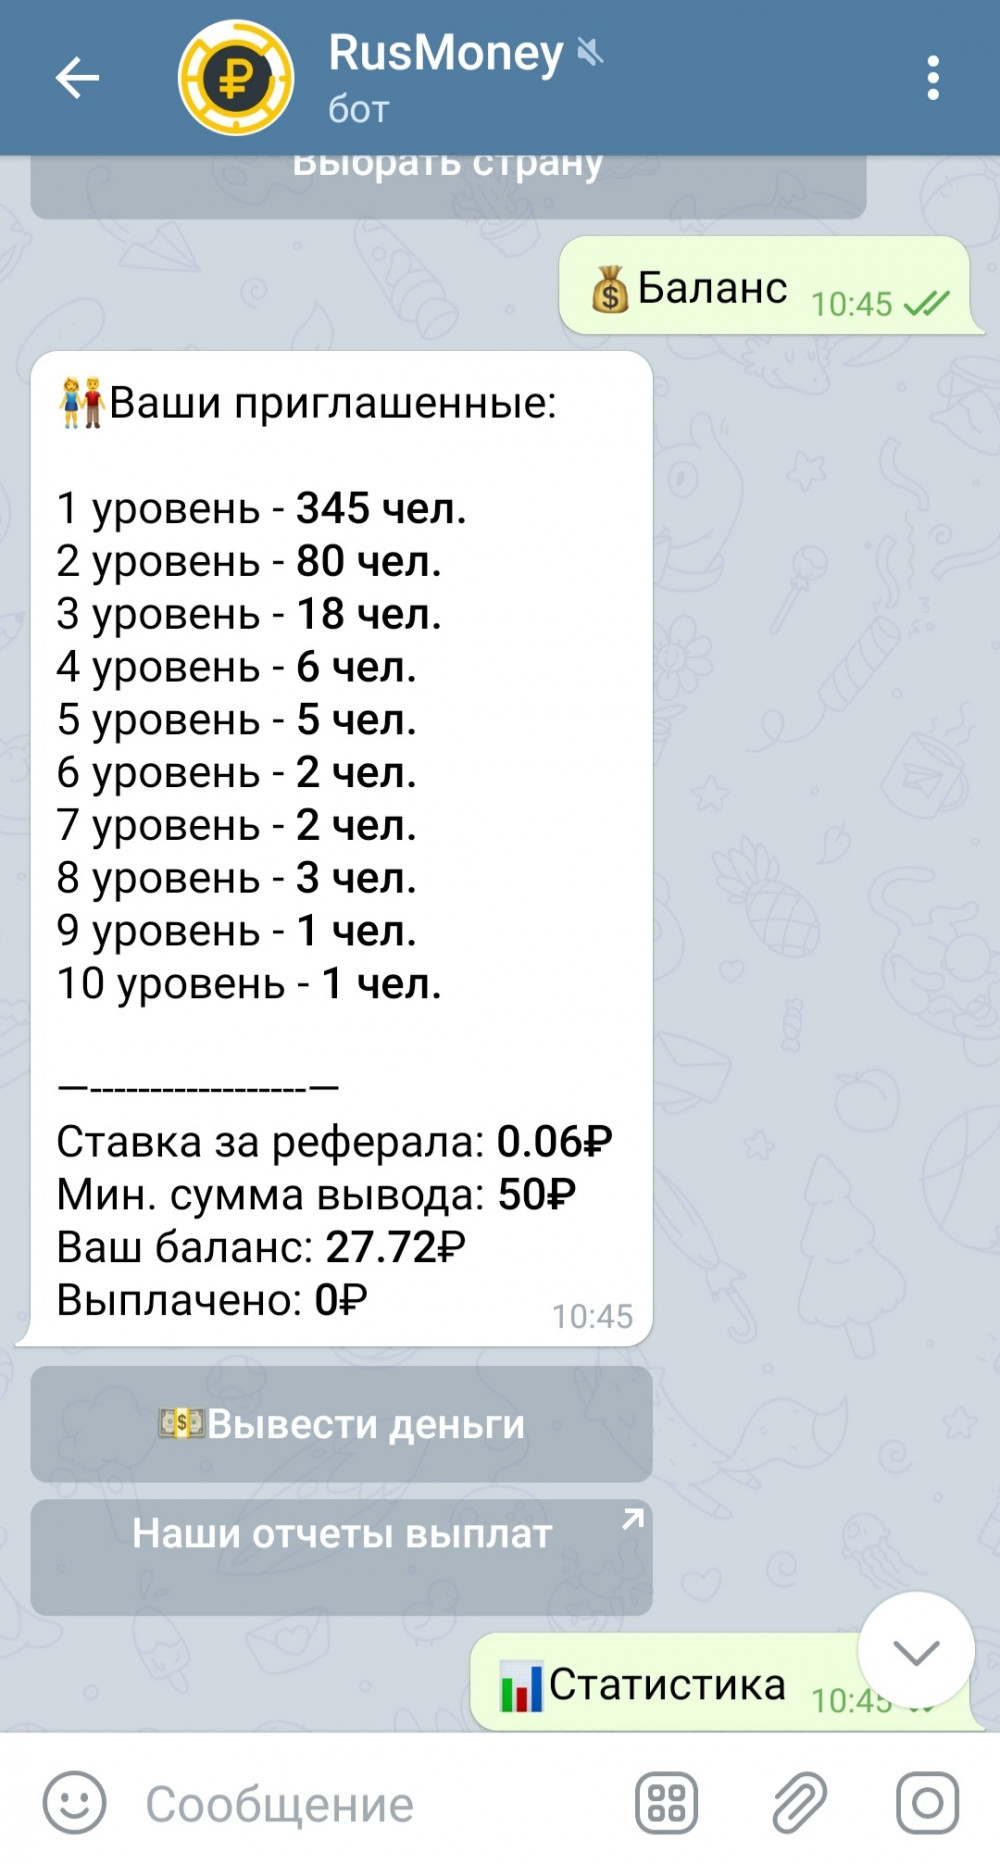 Заработок в телеграмме без вложений с выводом денег на русском карту сбербанка фото 110